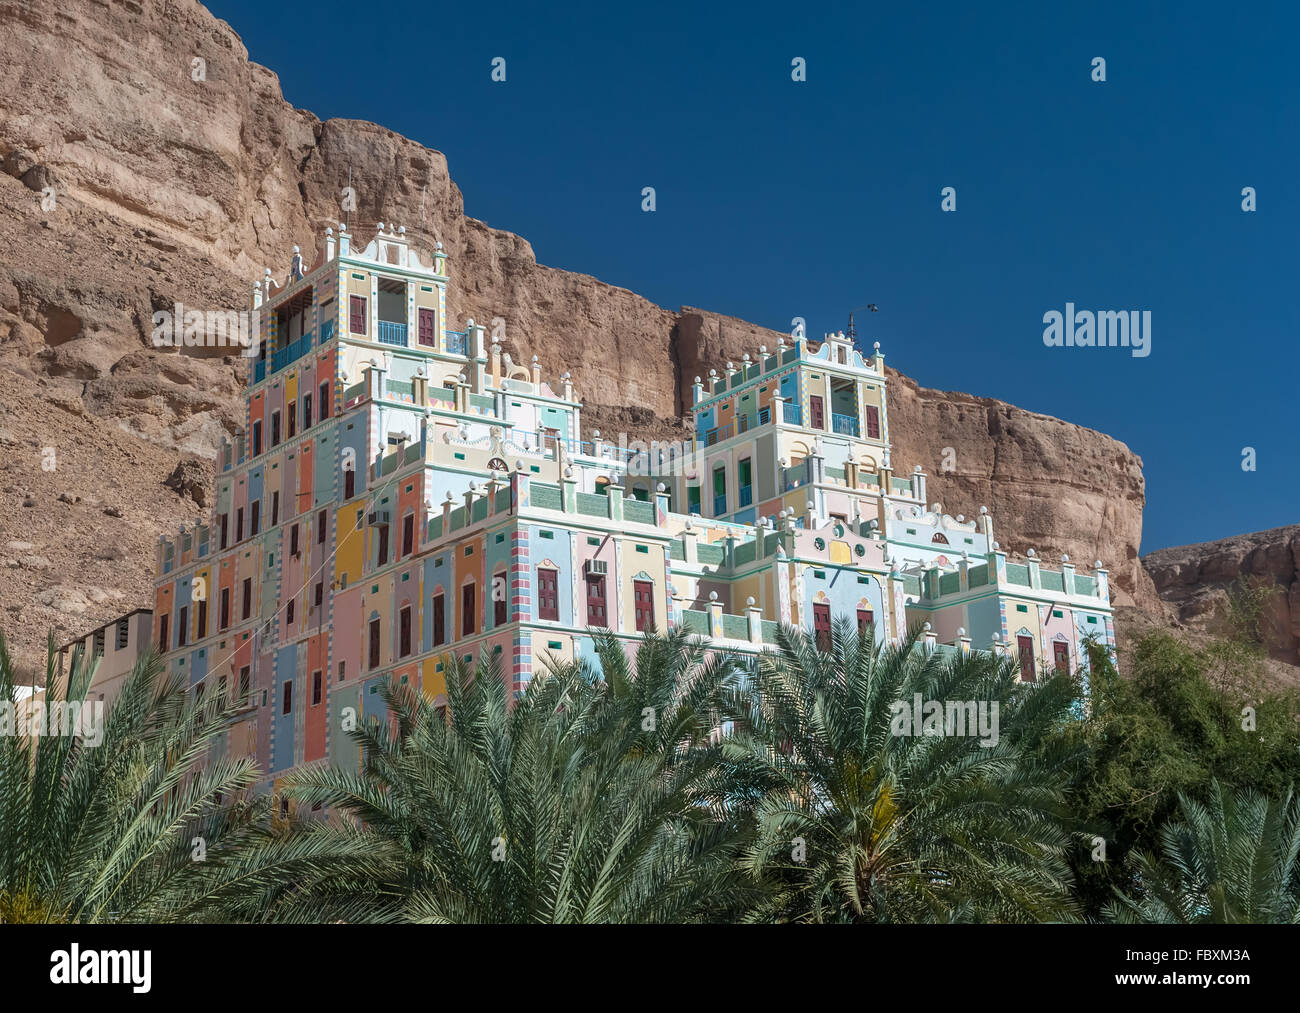 Kataira colorful hotel in Wadi Doan, Hadramaut, Yemen Stock Photo